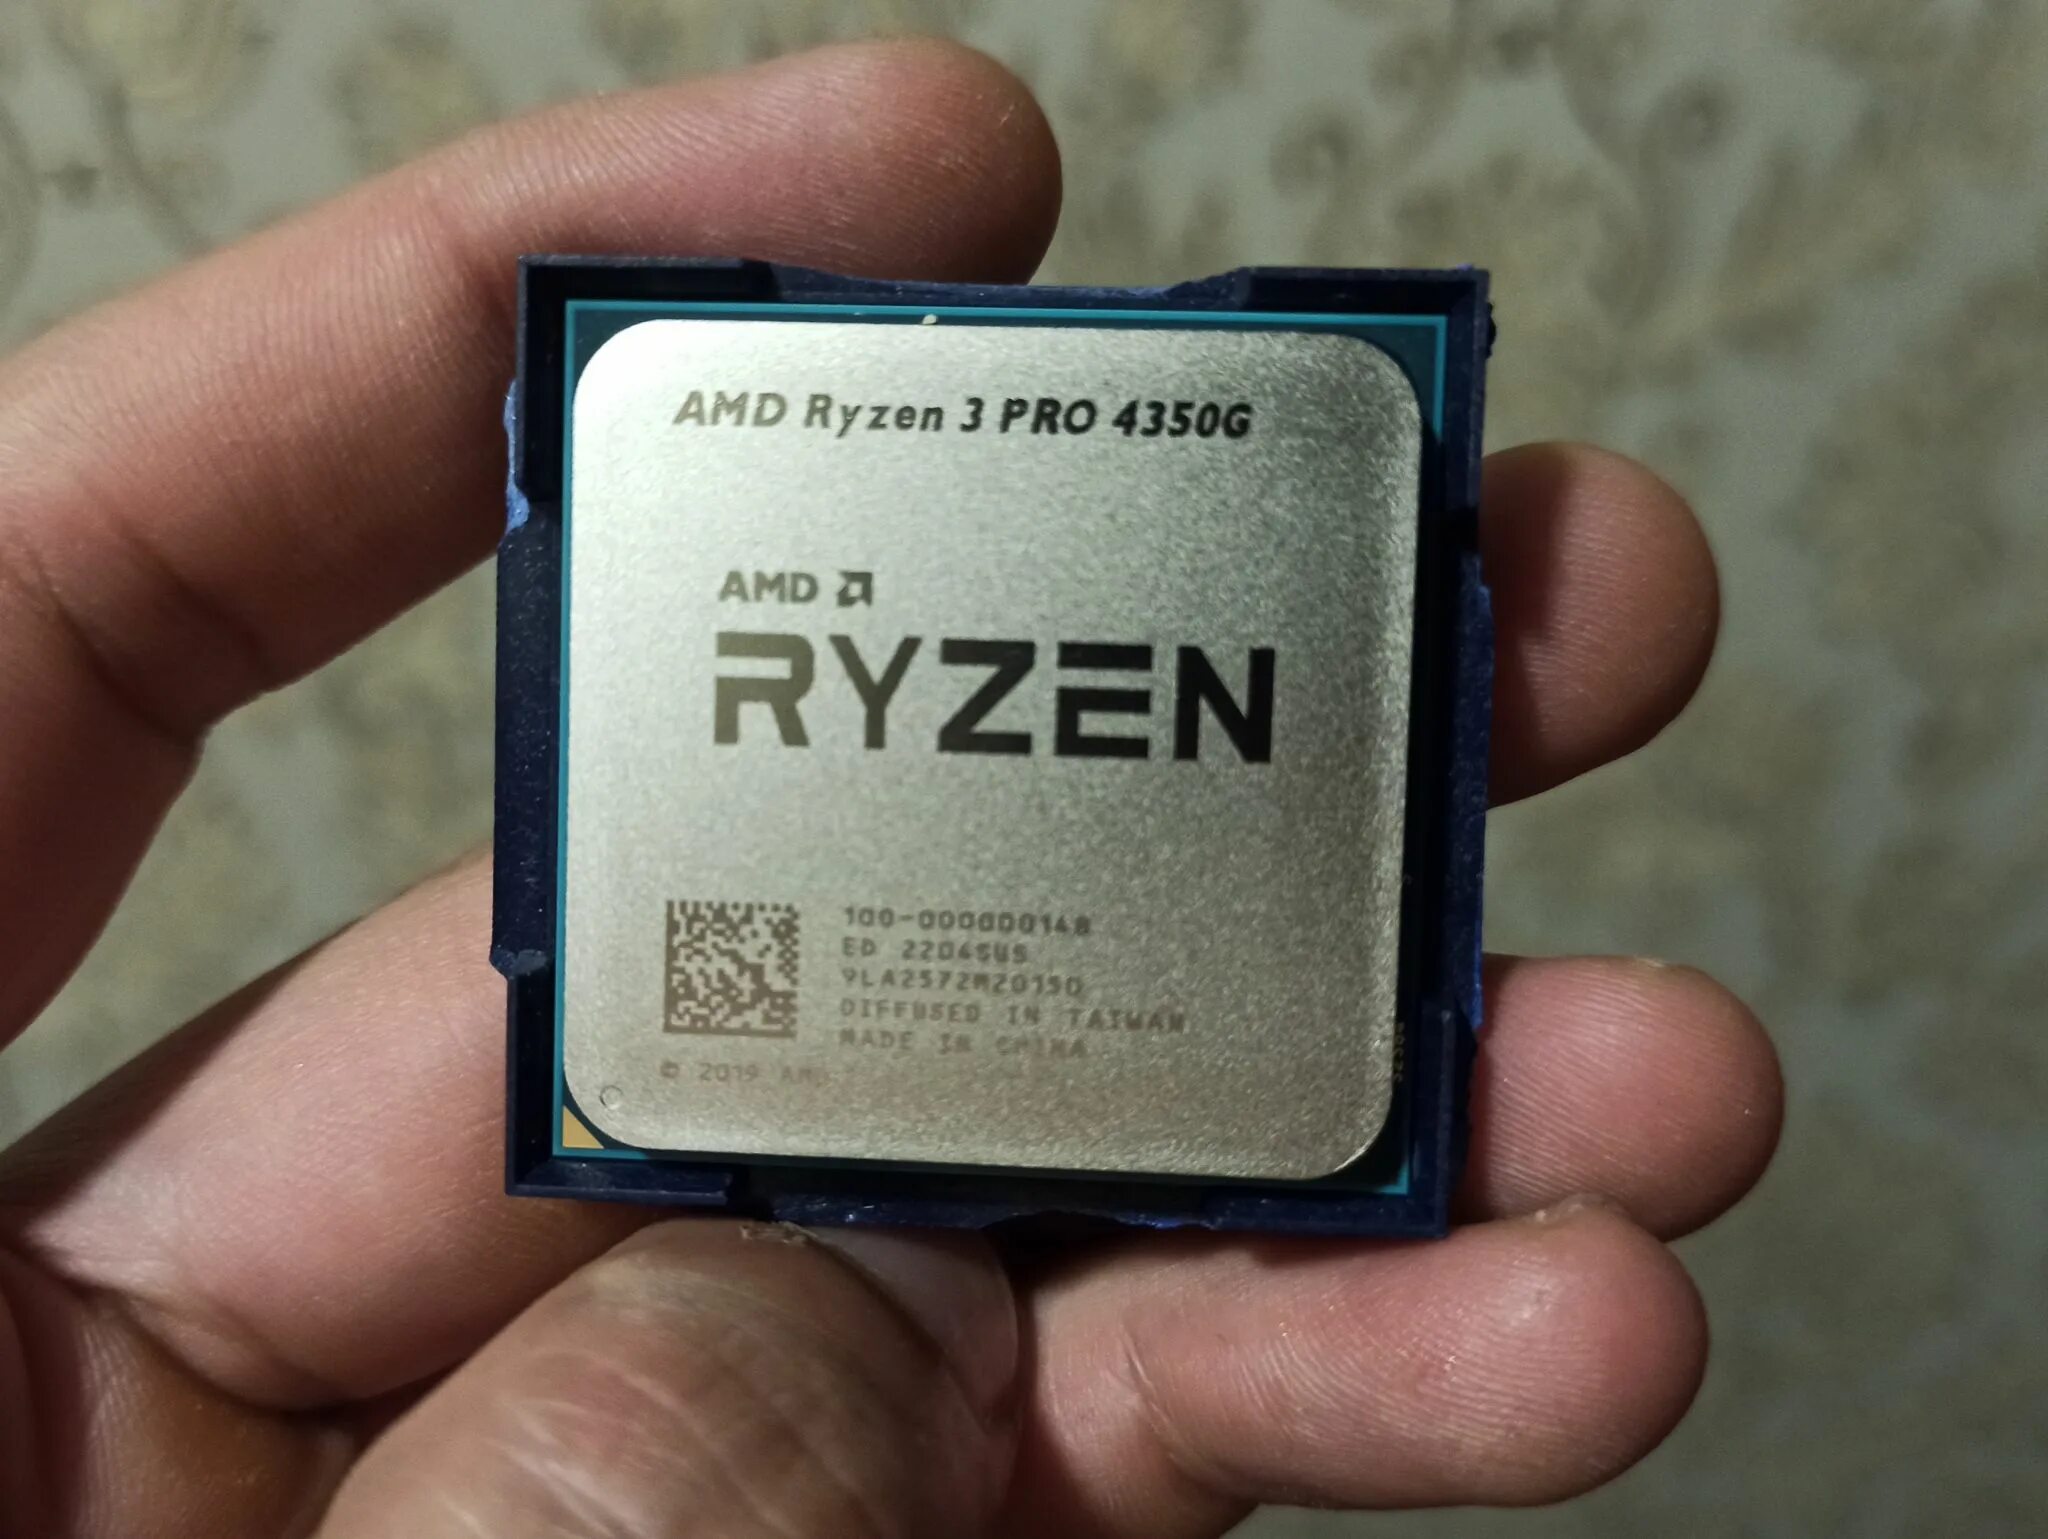 Процессор AMD Ryzen 3 Pro 4350g OEM. AMD Ryzen 3 Pro 4350g am4, 4 x 3800 МГЦ. Ryzen 3 4350g Pro в 3d. AMD Ryzen 3 Pro 4350g OEM (С кулером). Ryzen 3 pro 4350g